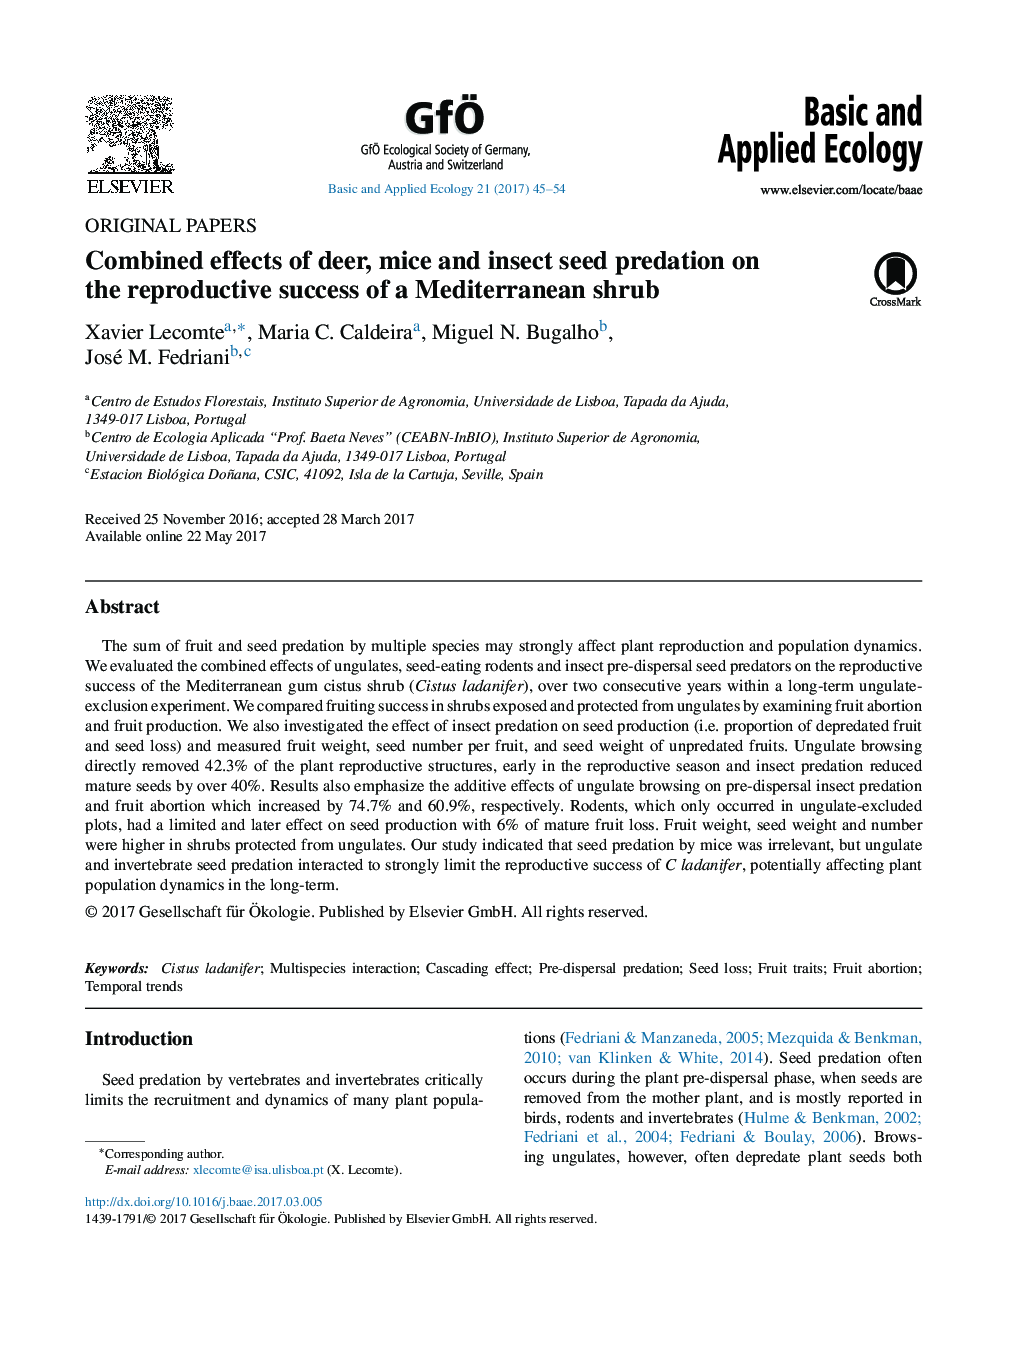 مقاله اصلی اثرات ترکیبی اثر شکار گوزن، موش و بذر حشرات بر موفقیت باروری بوته مدیترانه ای 